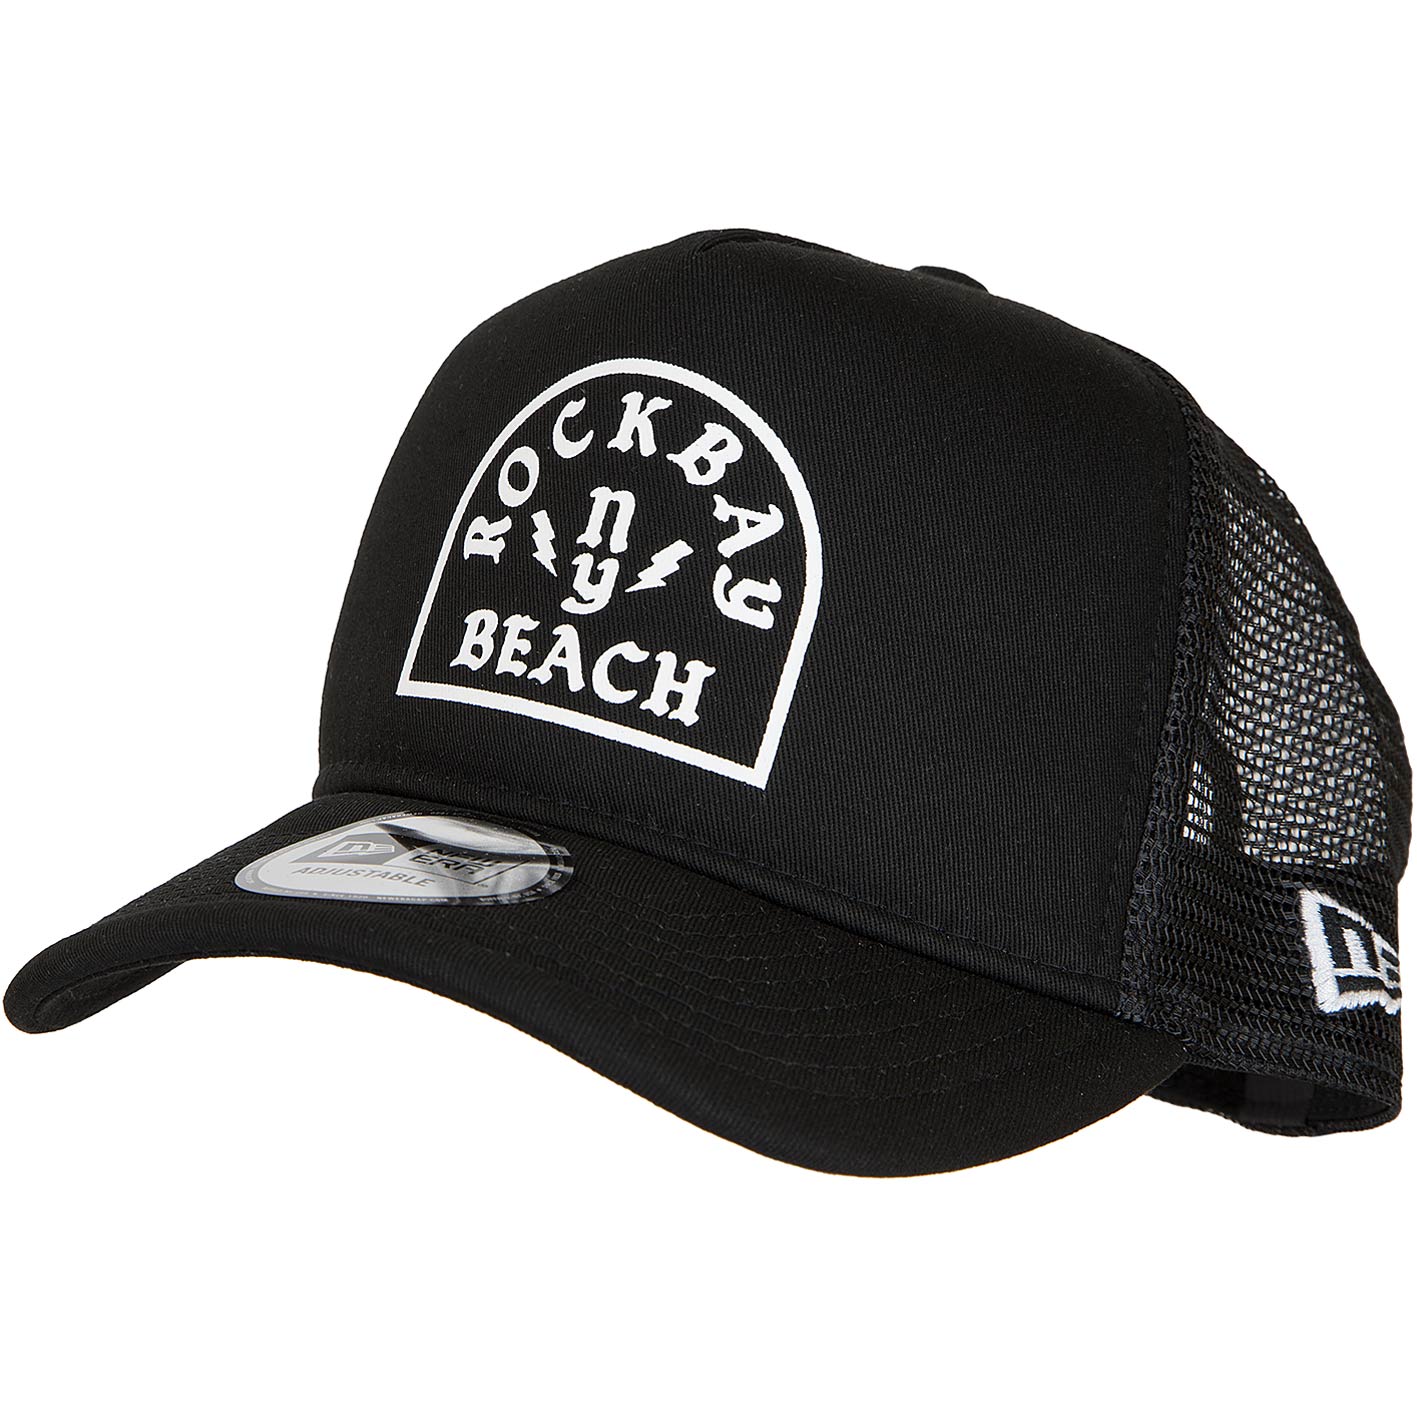 ☆ Trucker Rockbay schwarz/weiß bestellen! Beach - New Cap Era hier